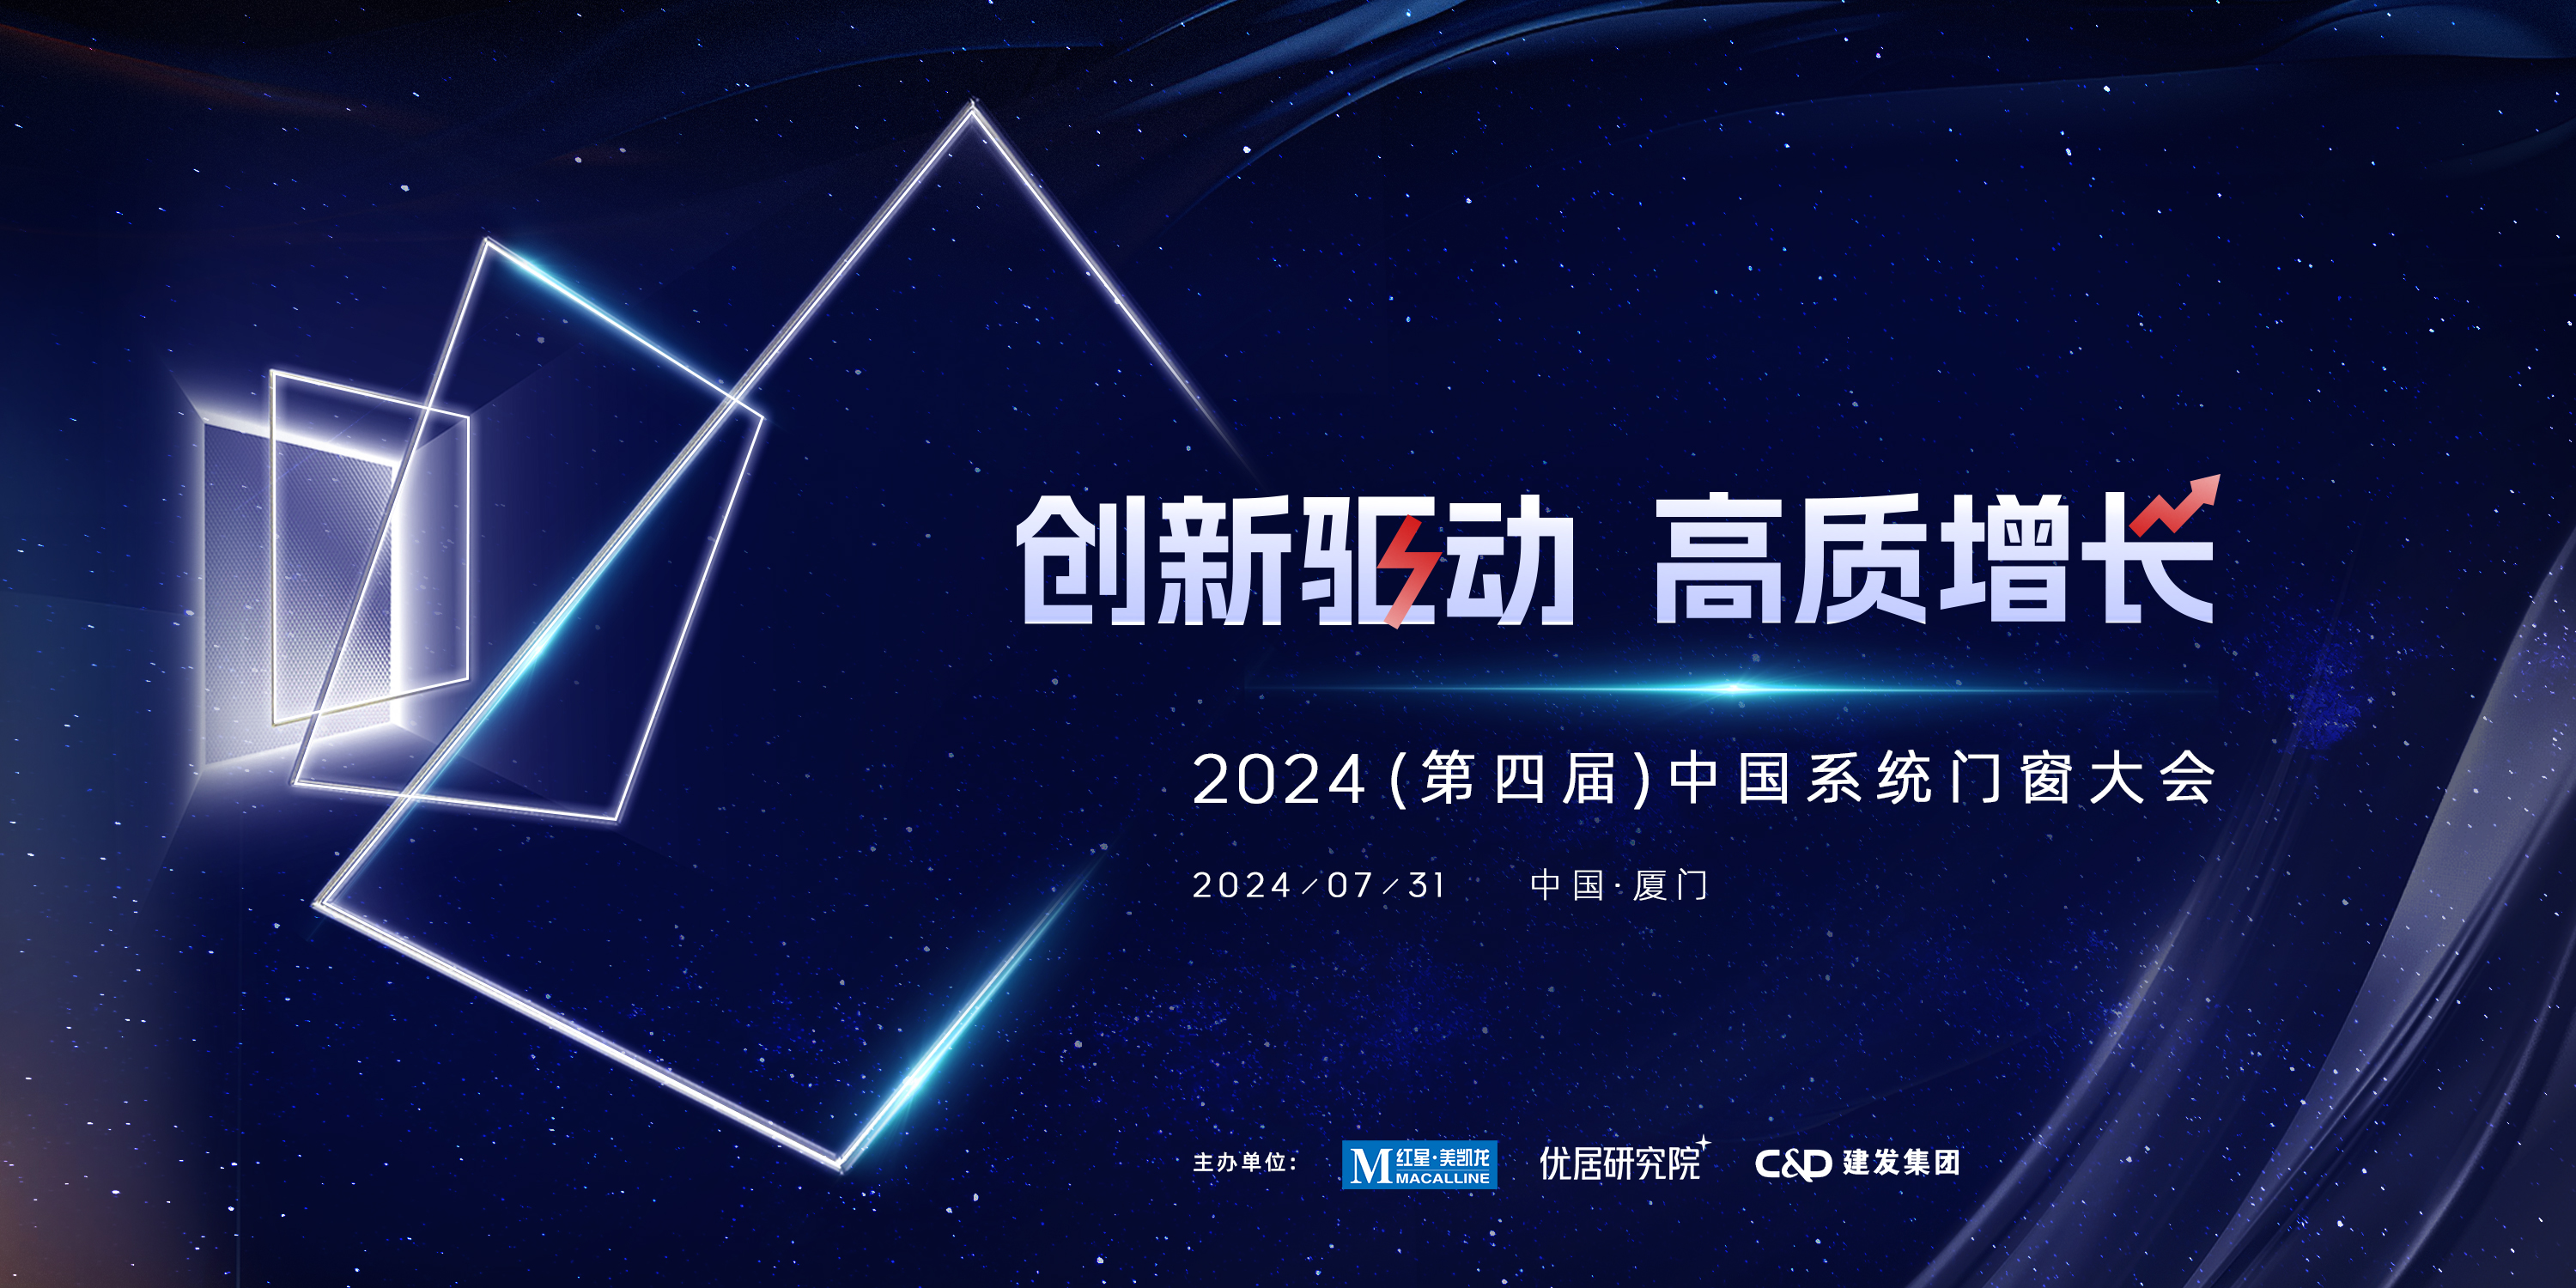 7月31日， 2024(第四届)中国系统门窗大会邀您共襄盛会，开启系统门窗行业新篇章！